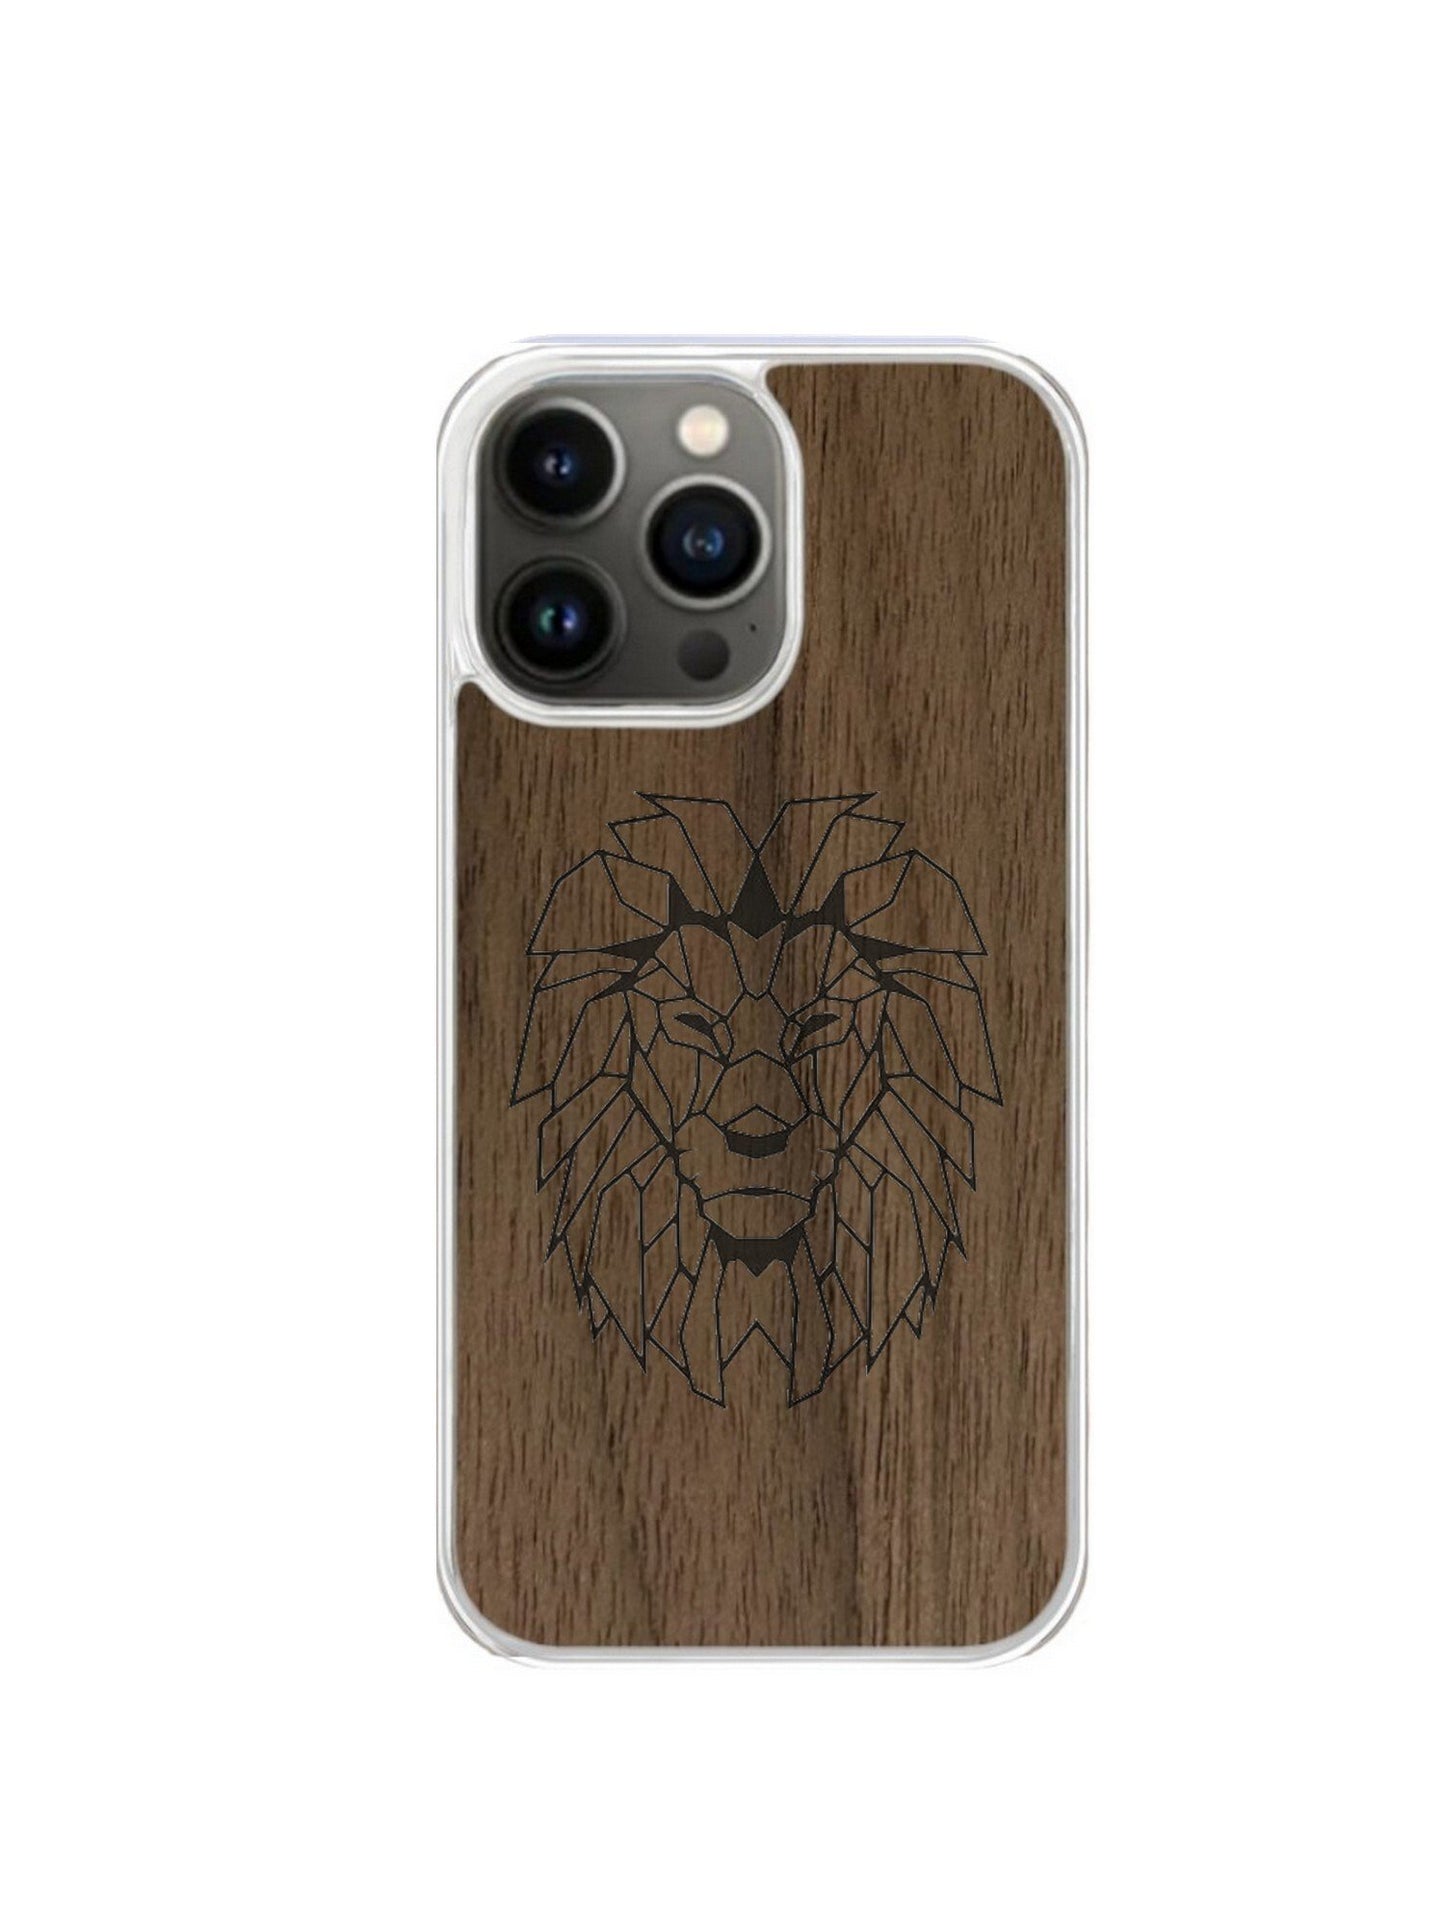 Coque Iphone transparente - Lion gravure